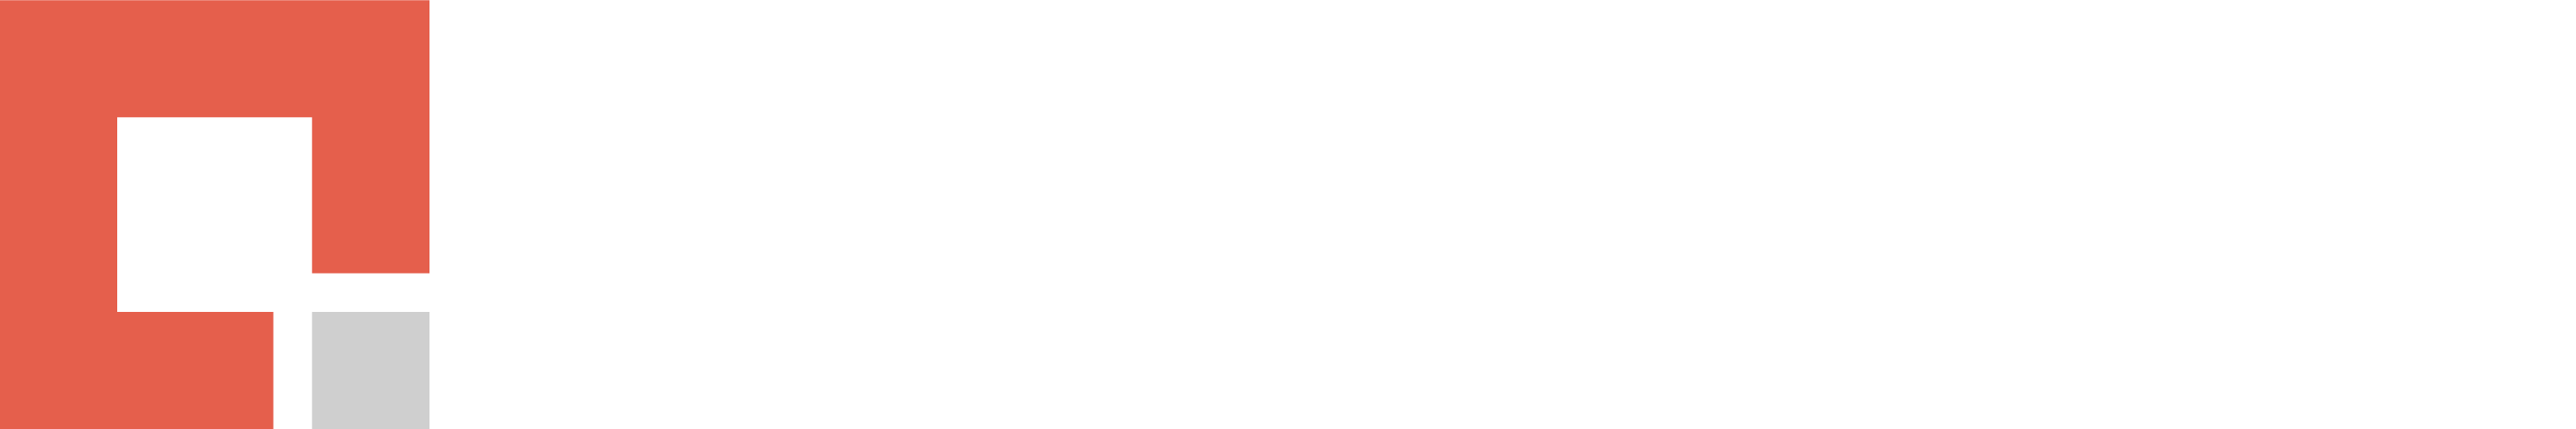 Credera logo white